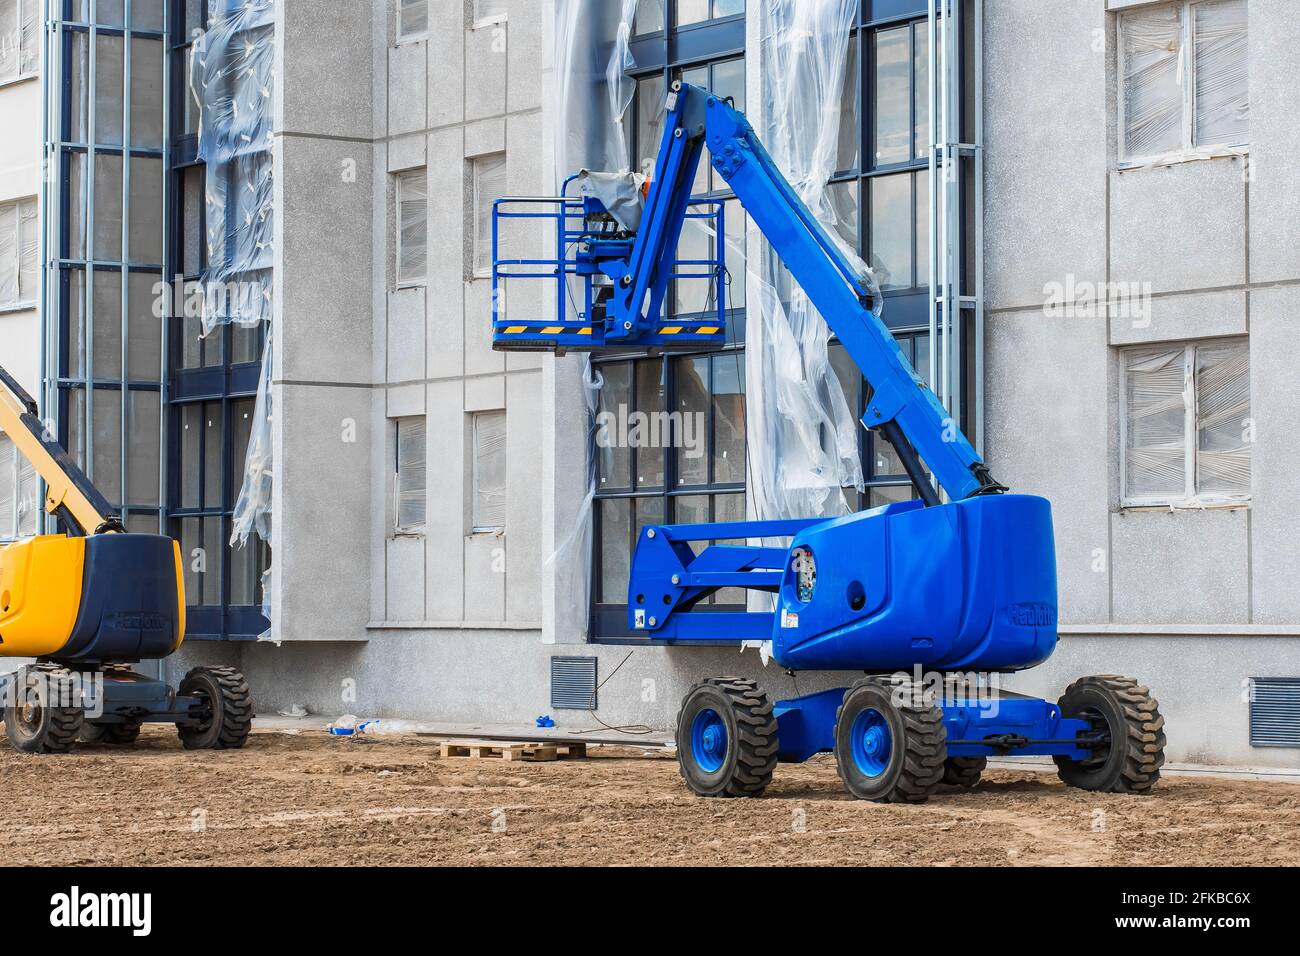 Bielorussia, Minsk - 28 maggio 2020: Veicolo industriale con piattaforma di sollevamento sullo sfondo di un nuovo edificio moderno in costruzione presso una costr Foto Stock